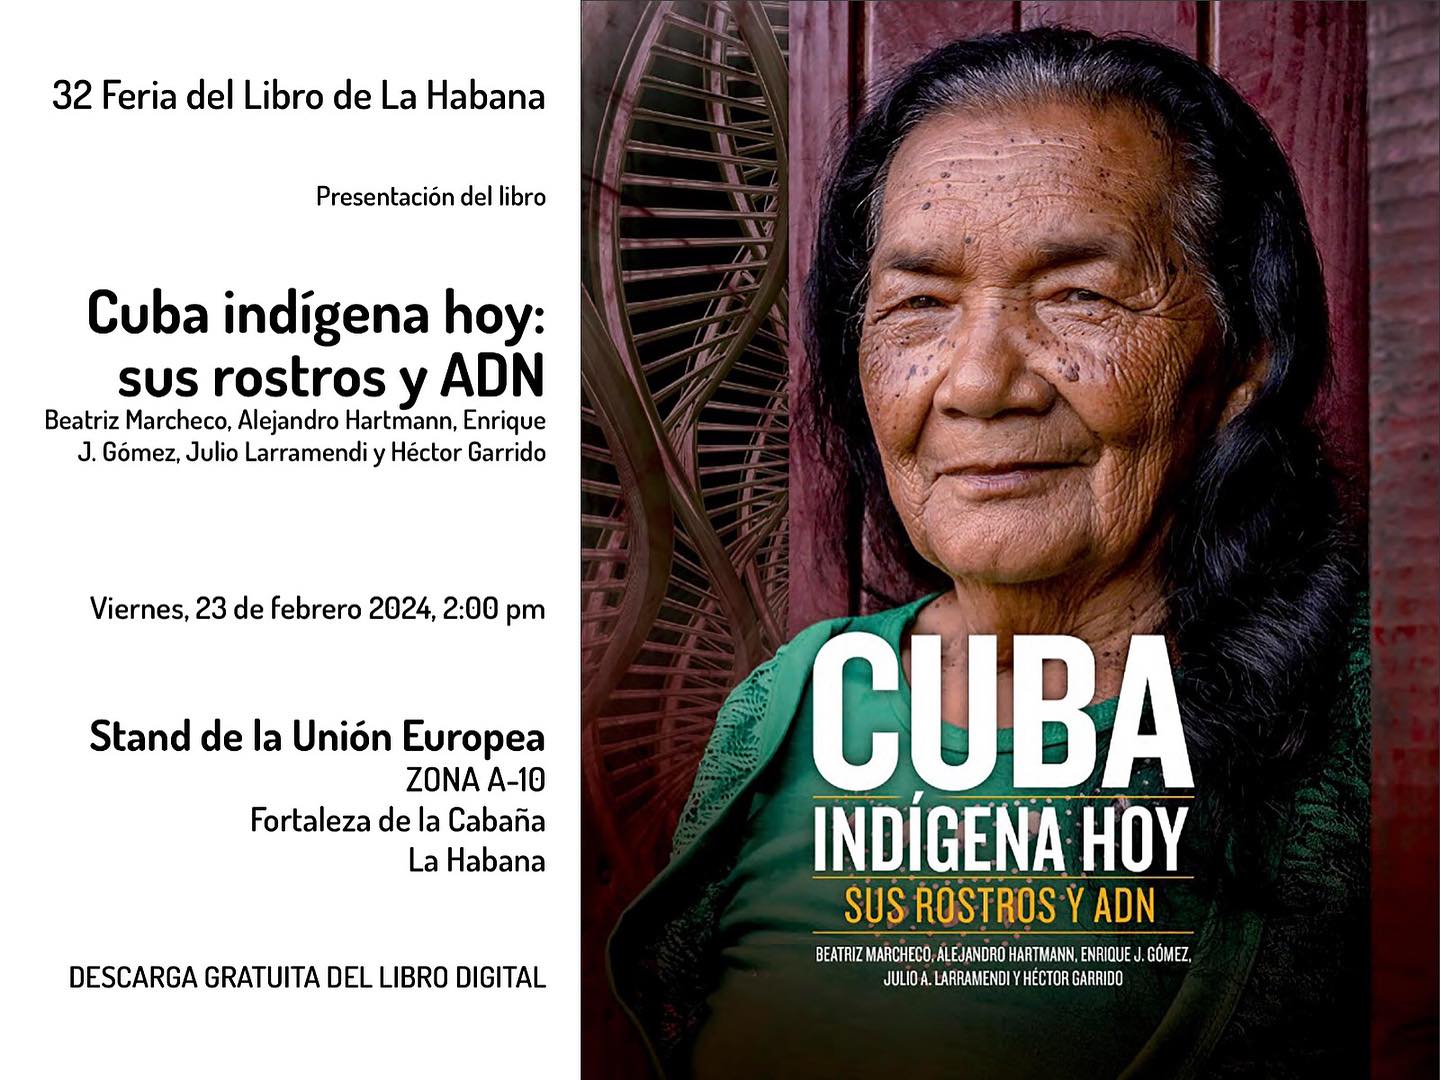 Presentación del libro Cuba Indígena hoy sus rostros y ADN